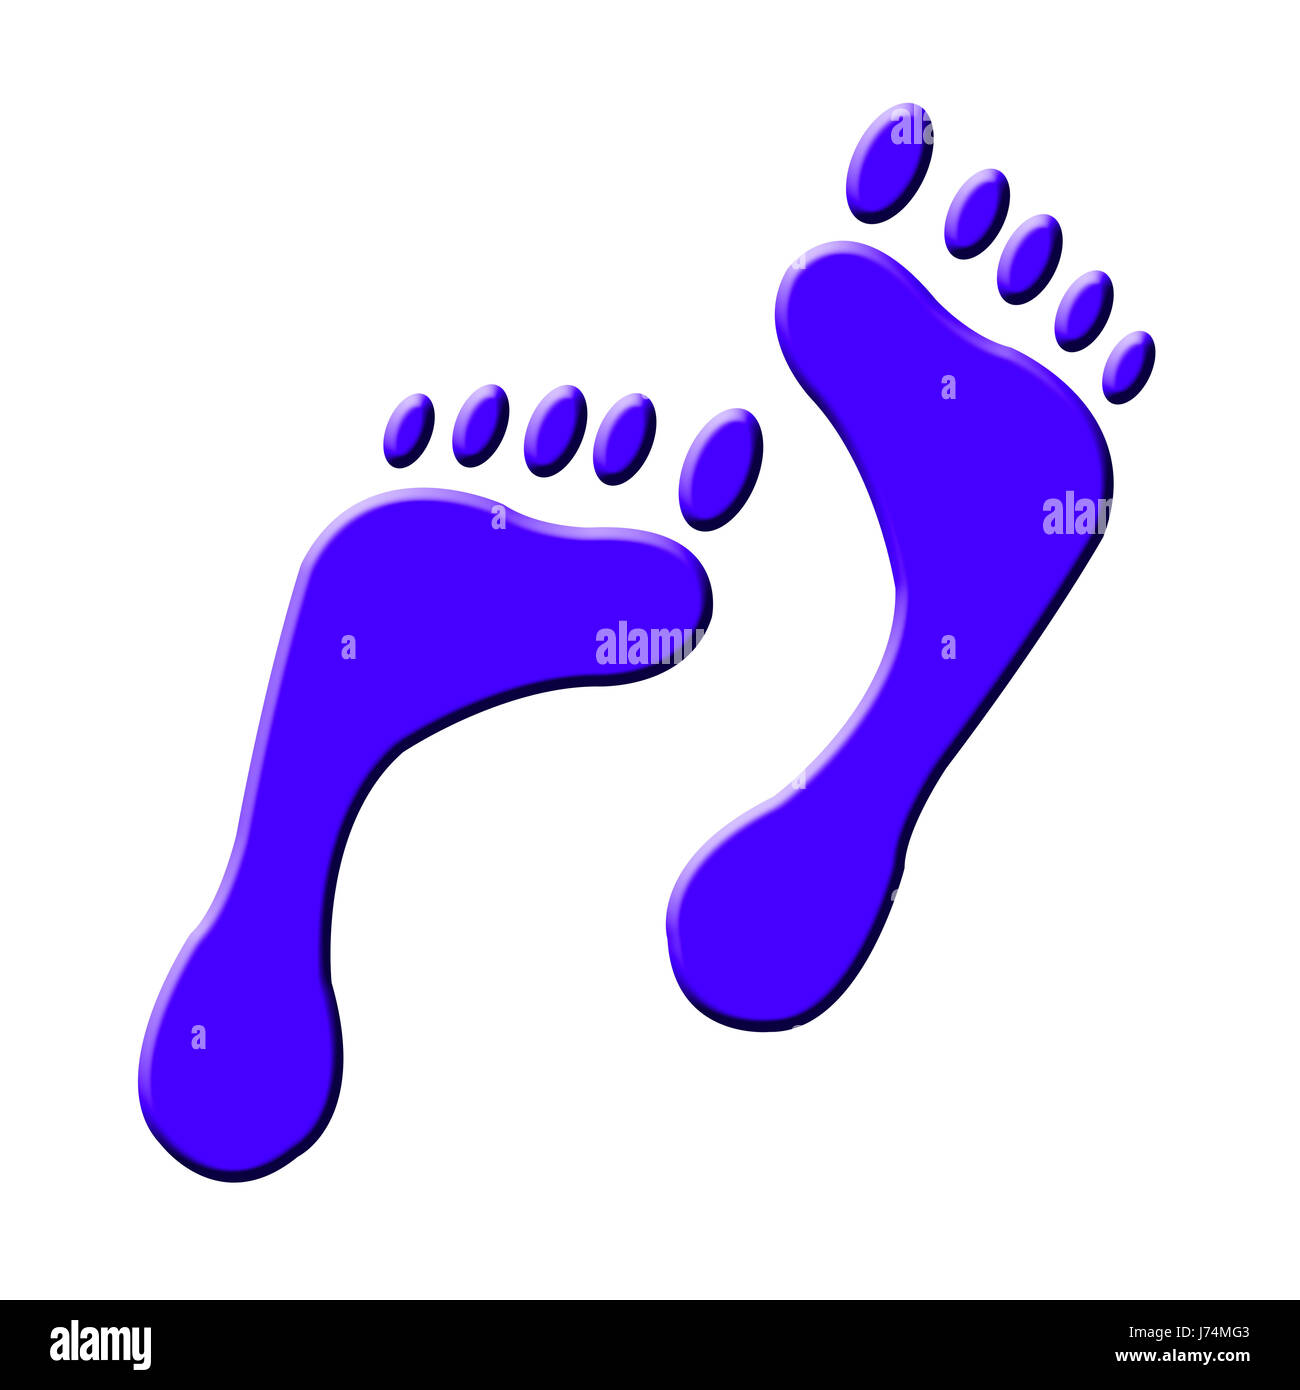 zu Fuß gehen Sie gehen zu Fuß Füße Zehen Track Piktogramm Symbol Piktogramm Handel-symbol Stockfoto